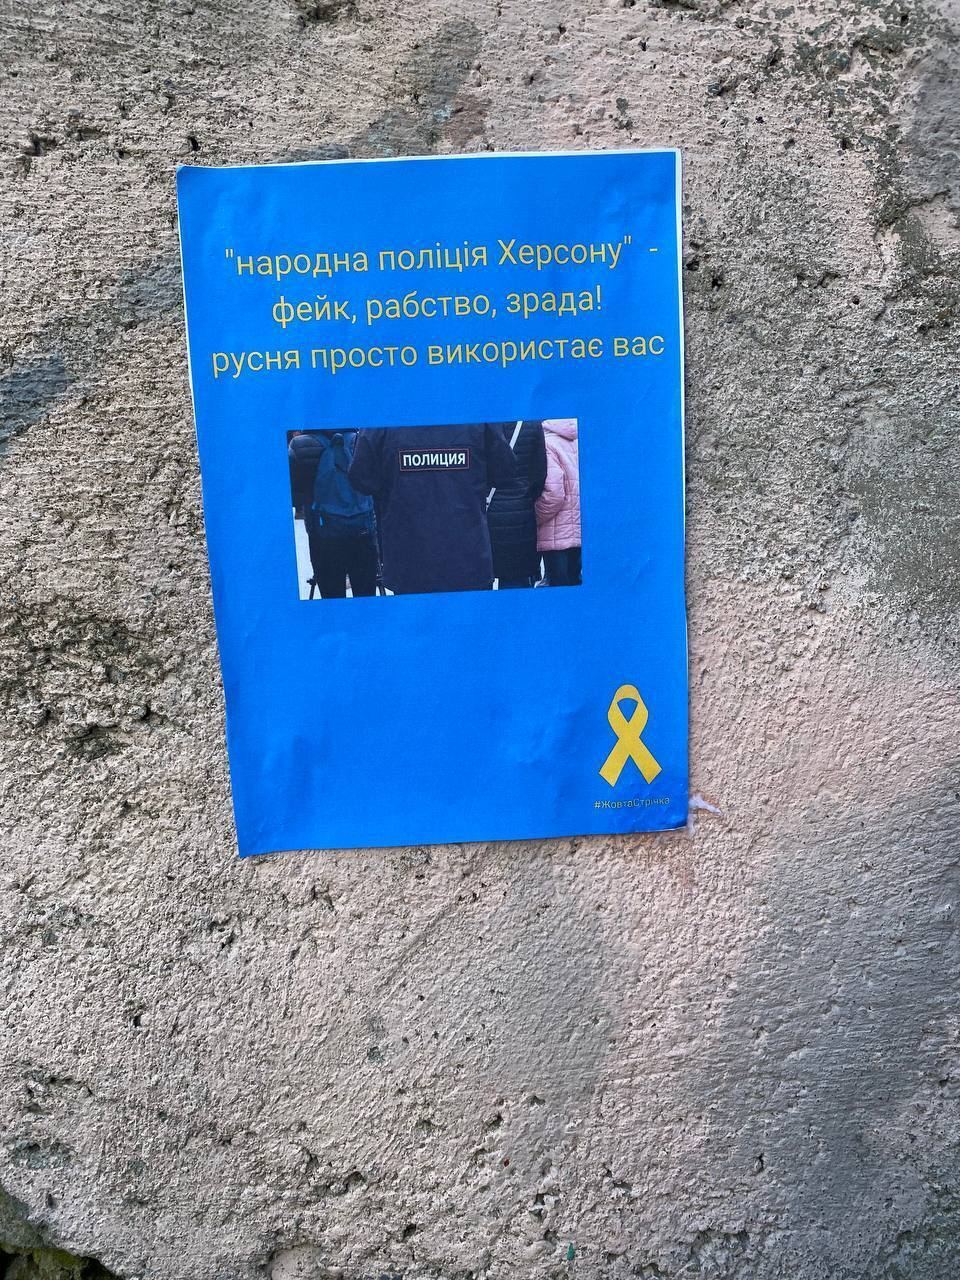 Украинцев на оккупированных территориях призвали не брать российские деньги и паспорта: силы сопротивления продолжают работу. Фото